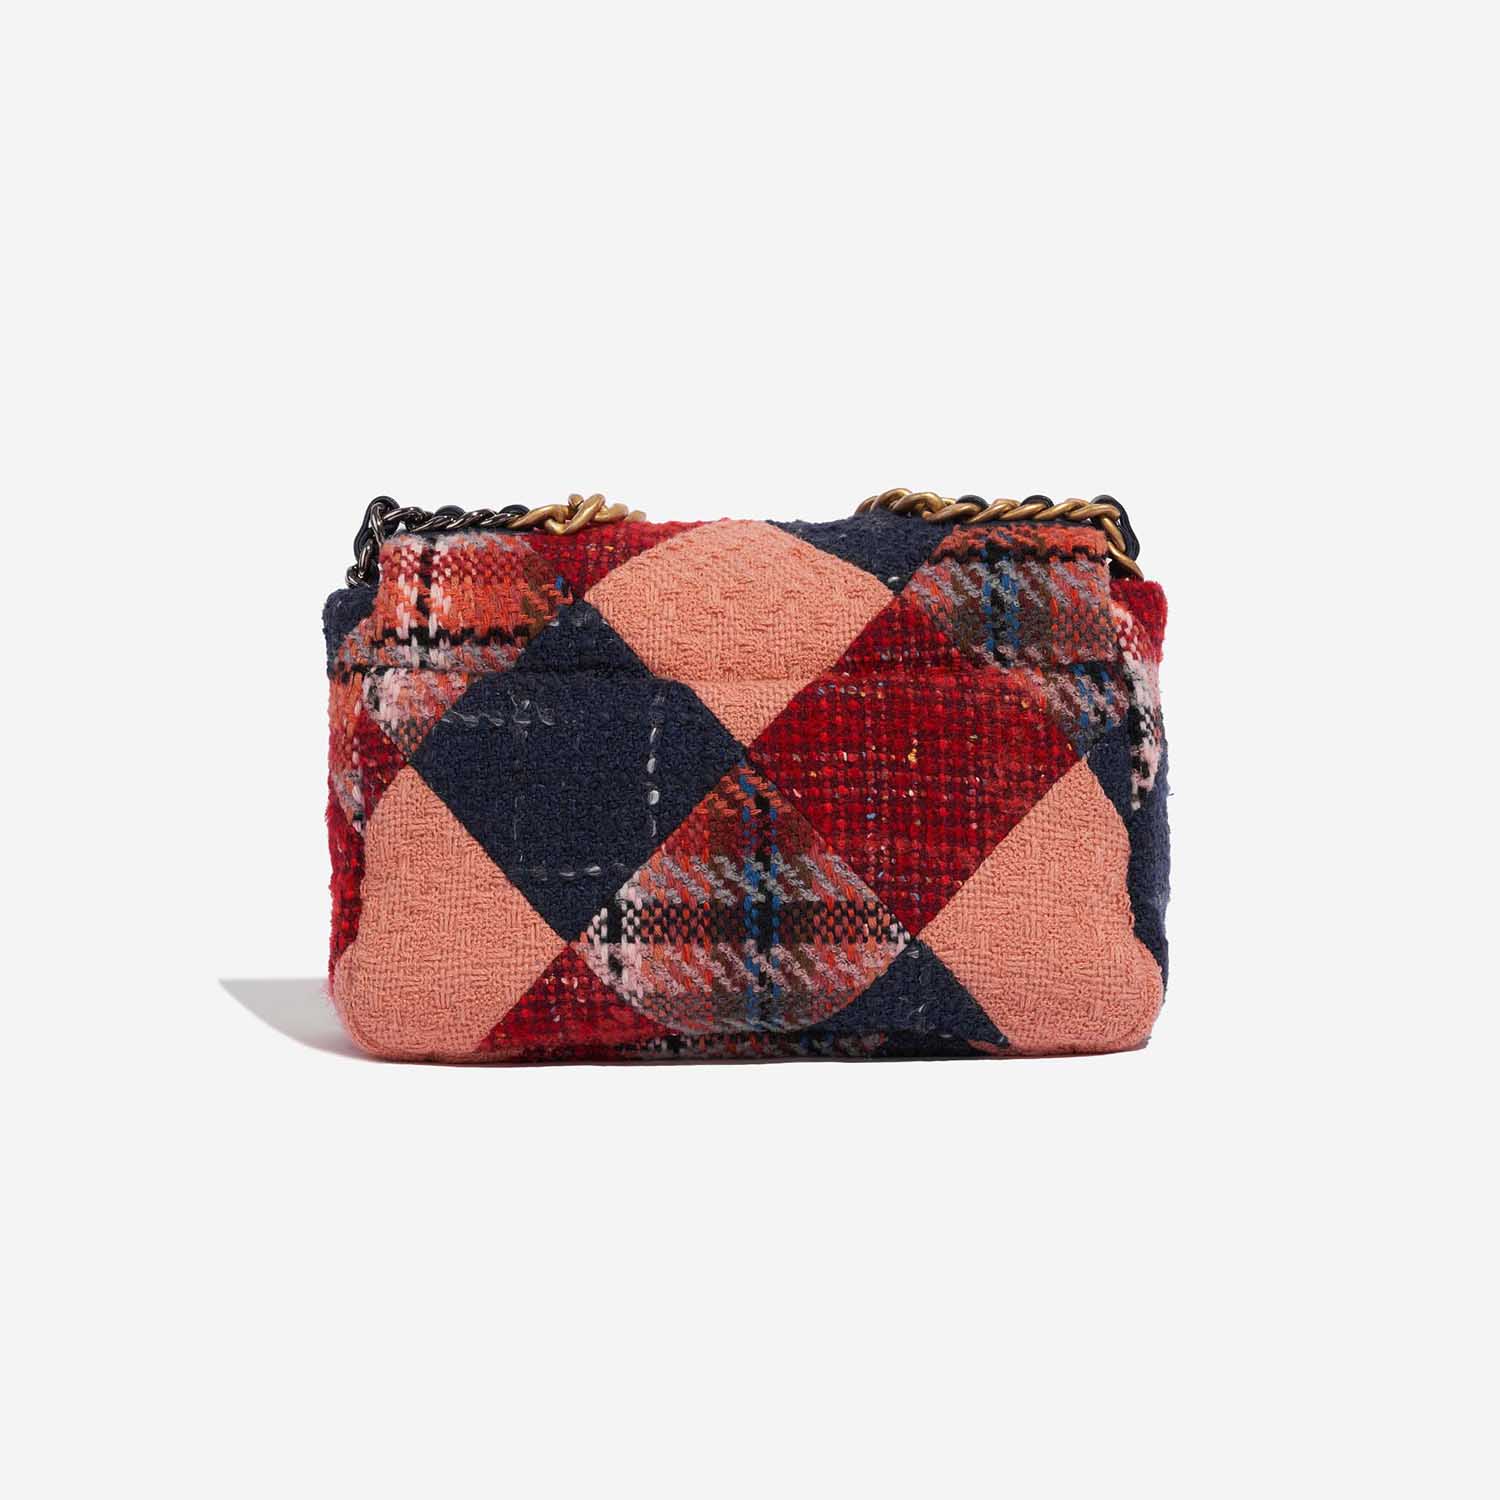 Chanel 19 tweed handbag Chanel Multicolour in Tweed - 20816191